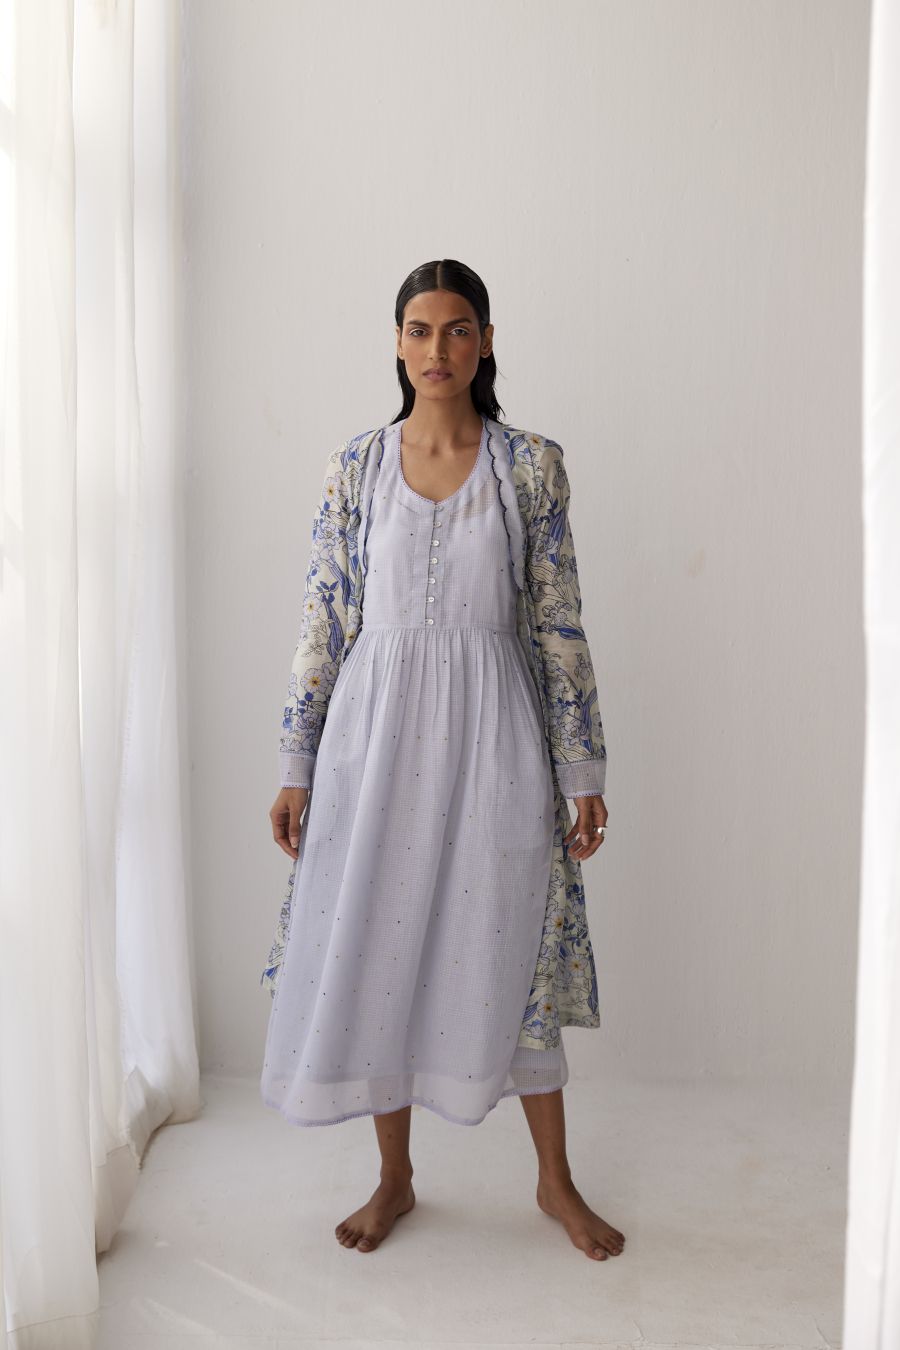 White & veri peri Overlay in Chanderi paired with kota sleeveless dress